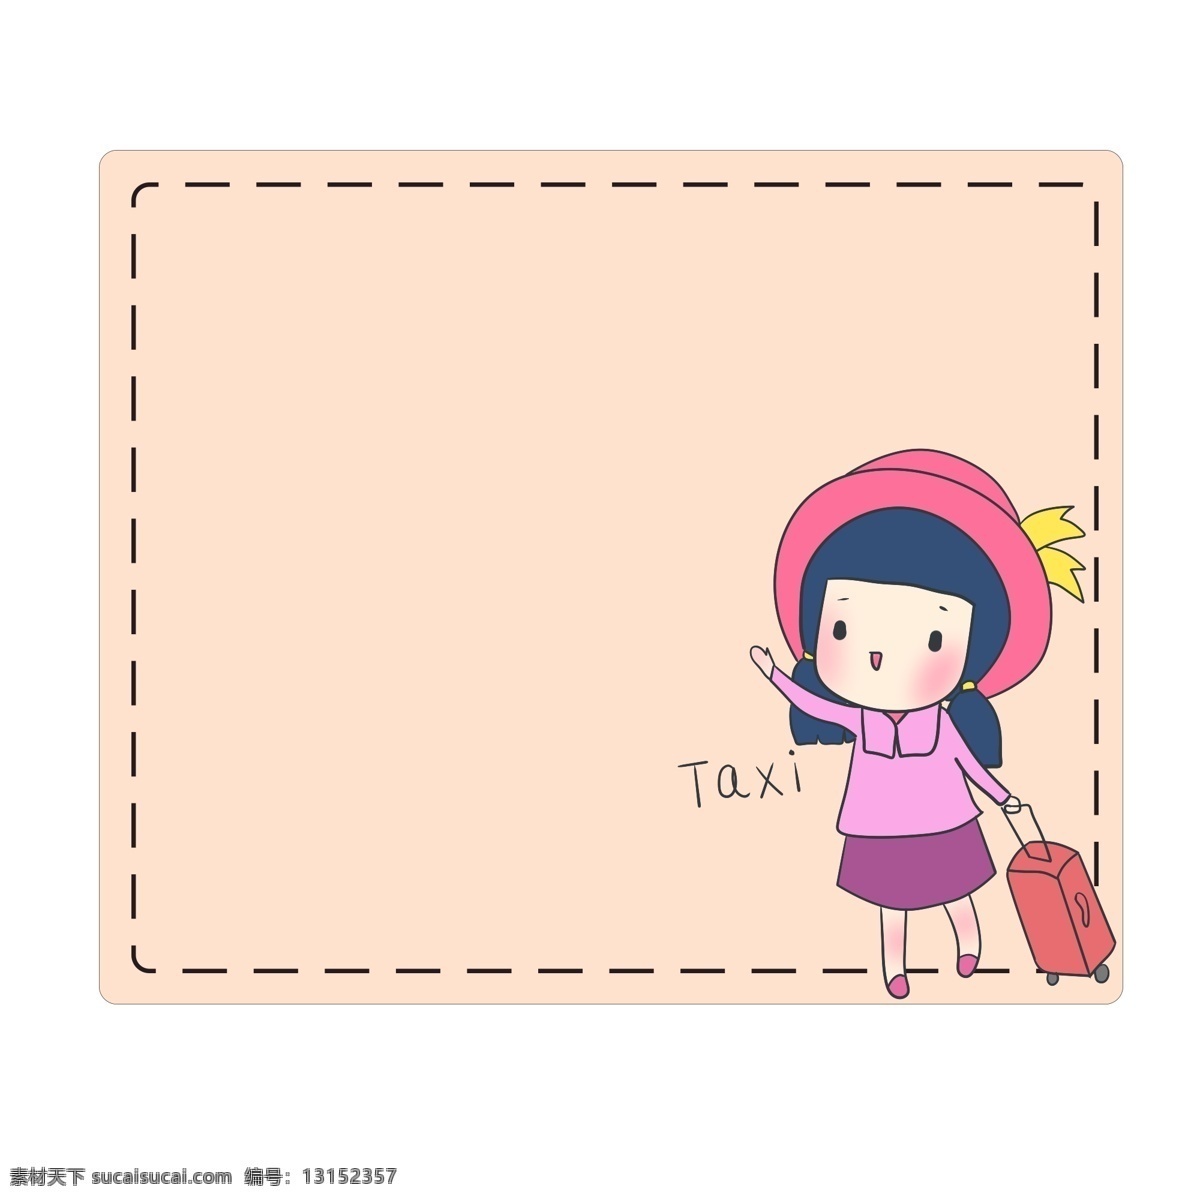 粉色 旅行 边框 插画 粉色的边框 旅行边框 人物边框 可爱的边框 手绘边框 虚线边框 唯美边框